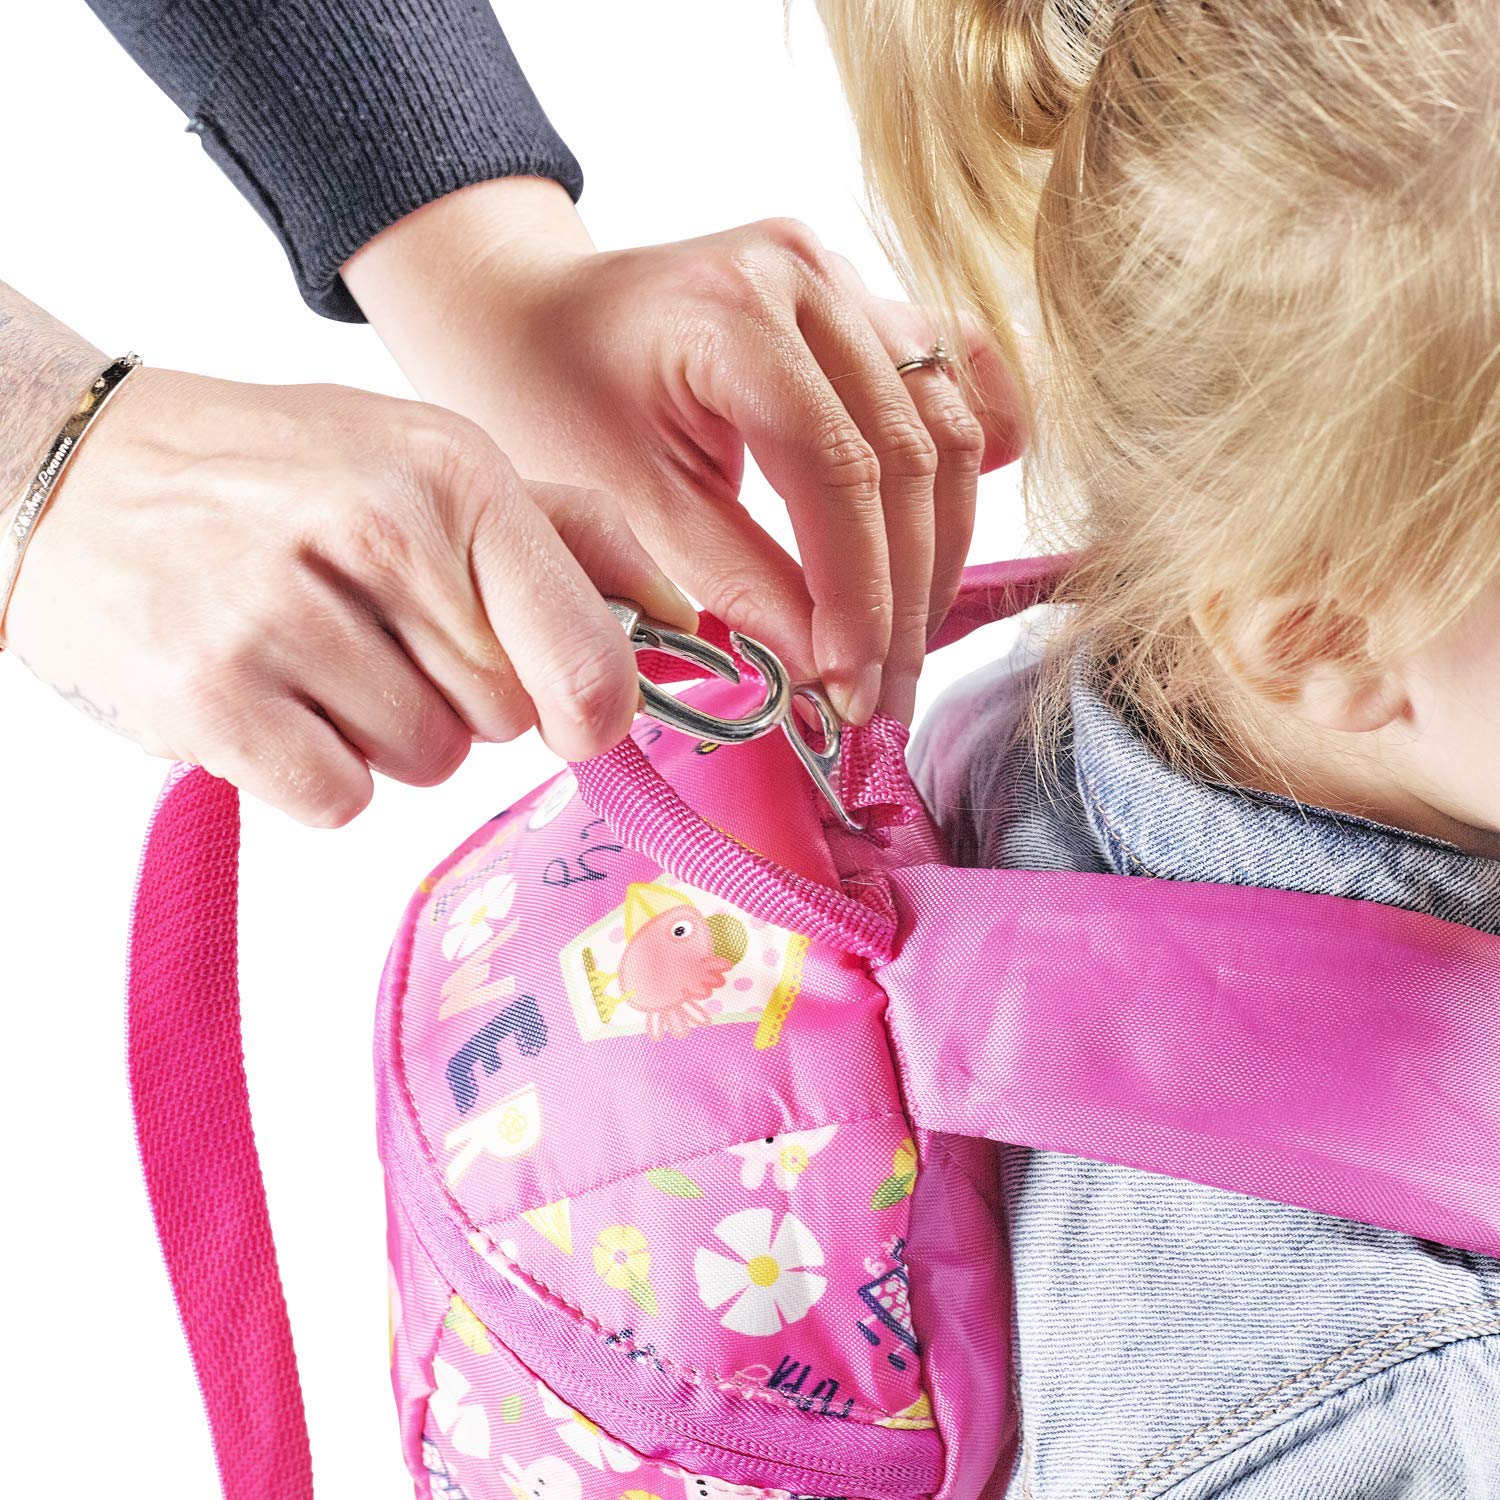 Peppa Pig with Reins School Bag Rucksack Backpack